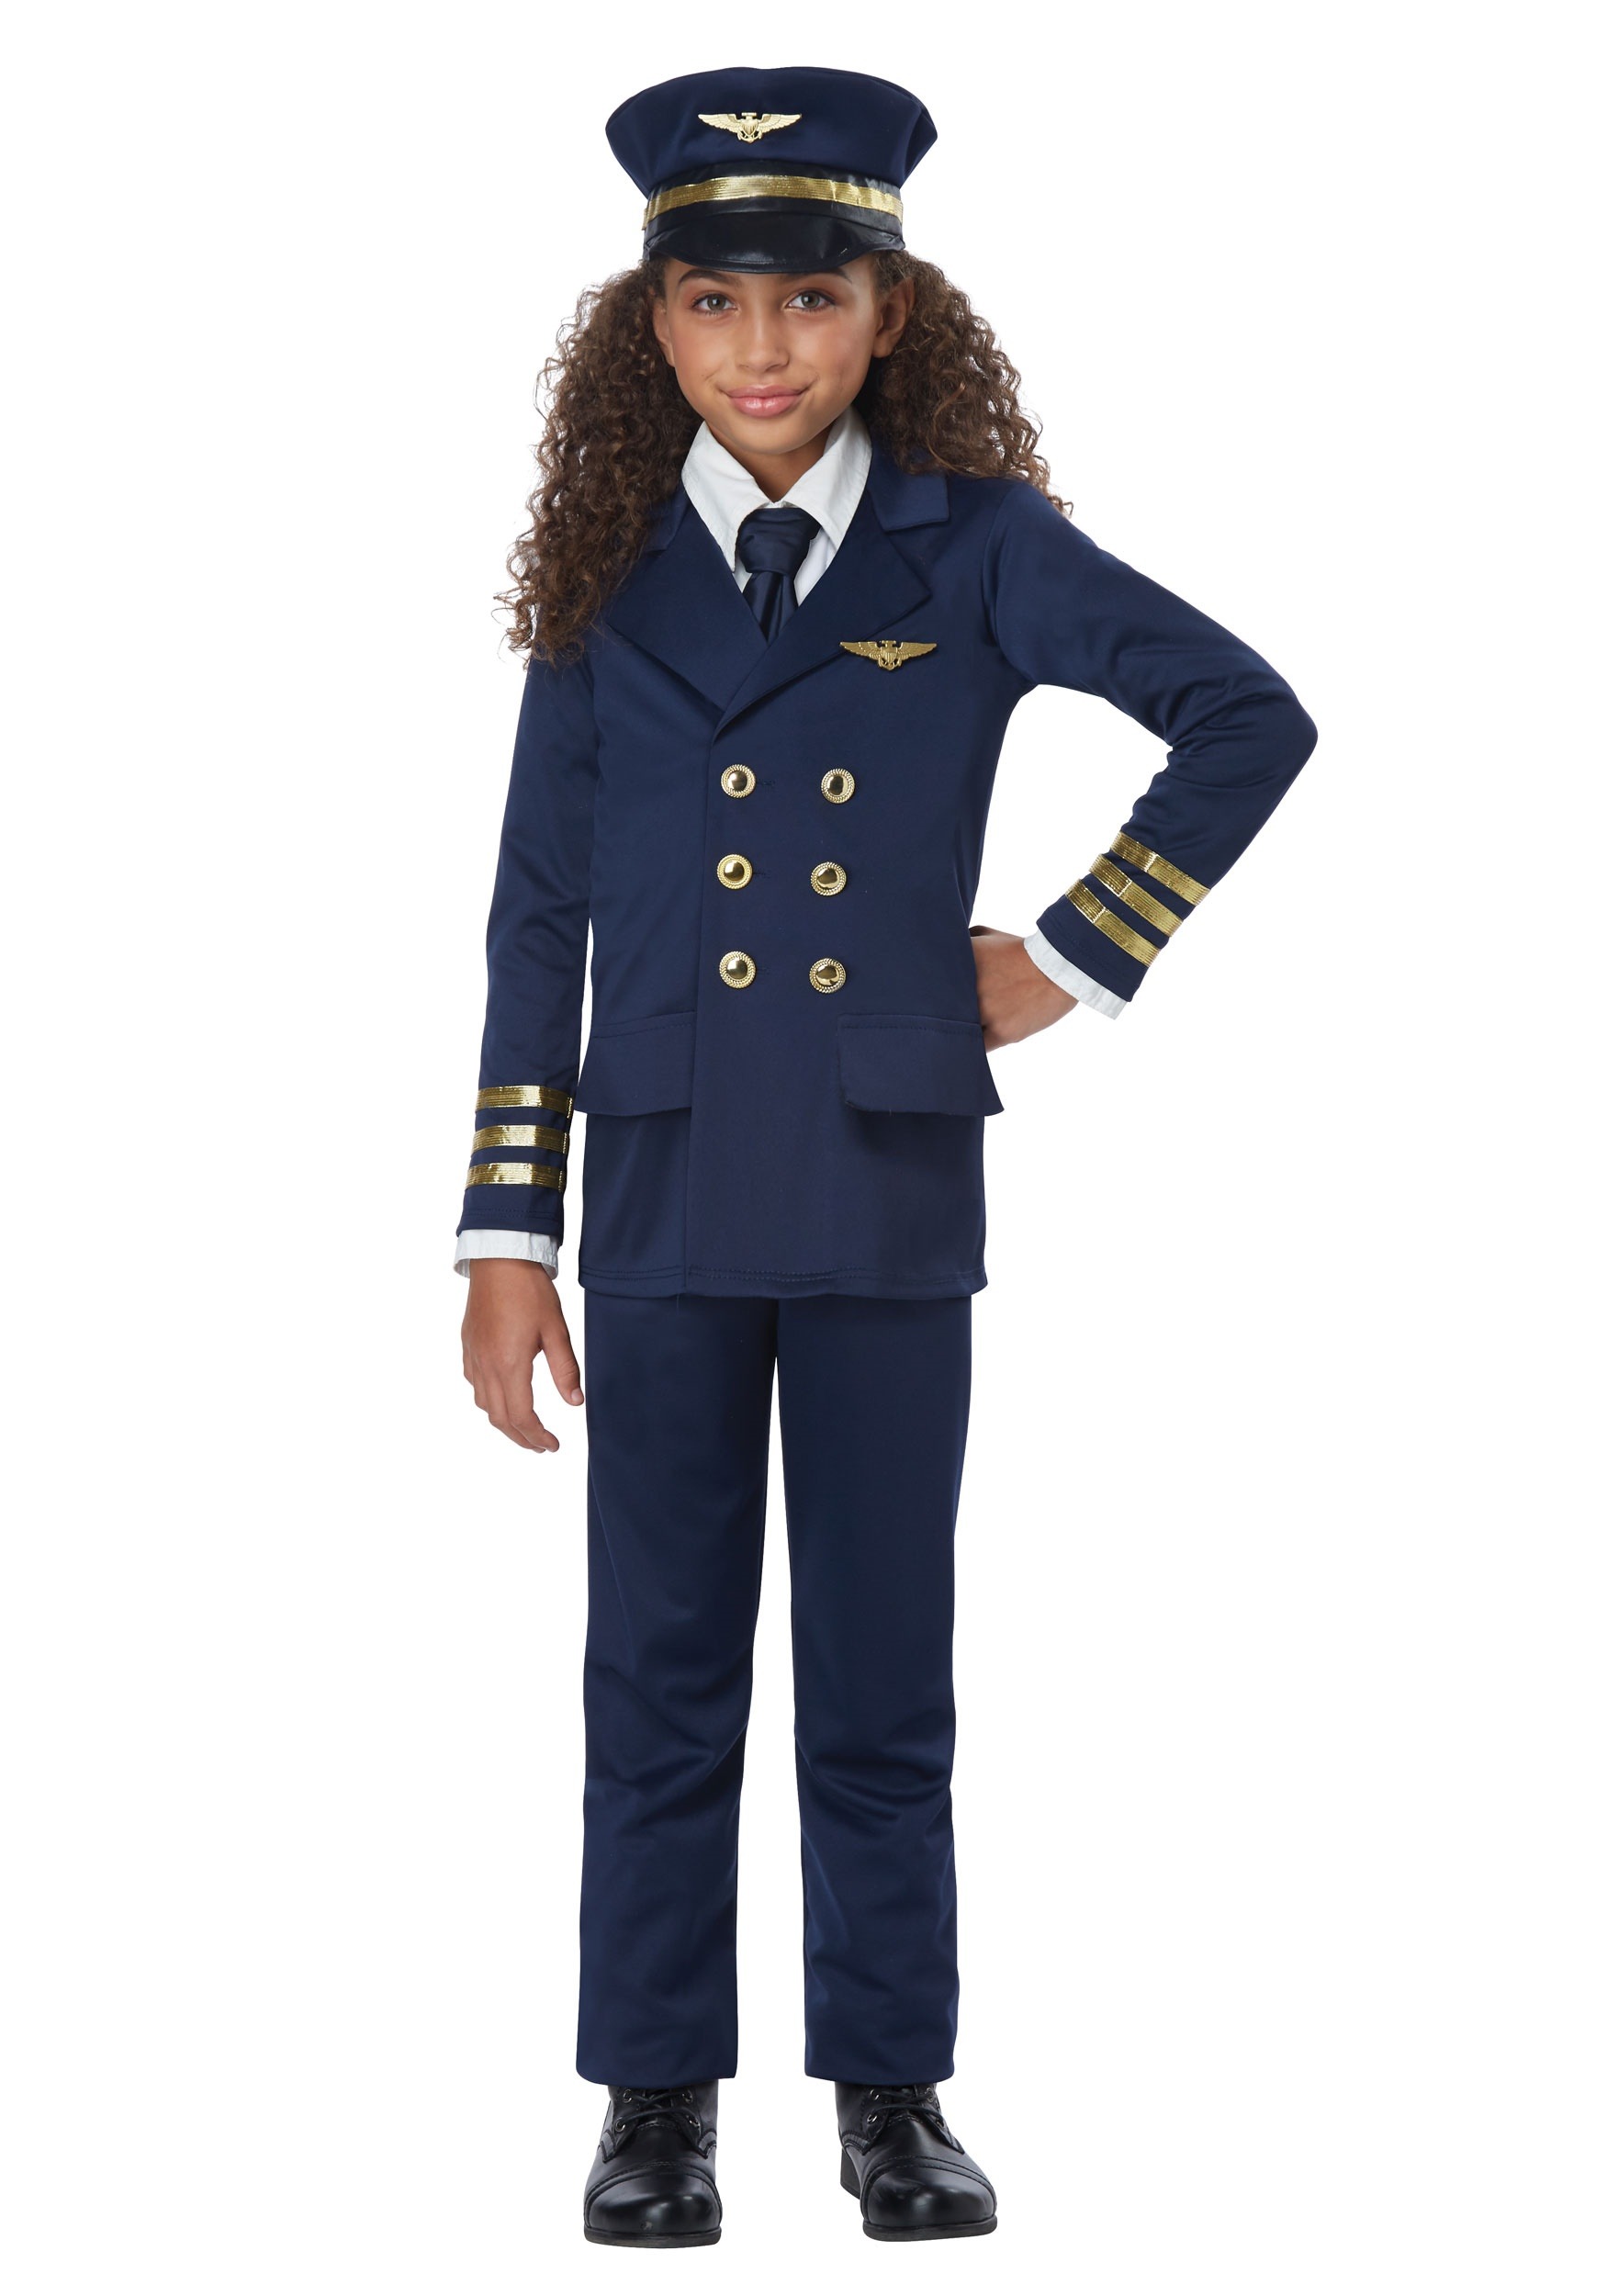 Dress Up America Pilot Costume for Kids Pilot Captain Dress-up for Boys & Girls 